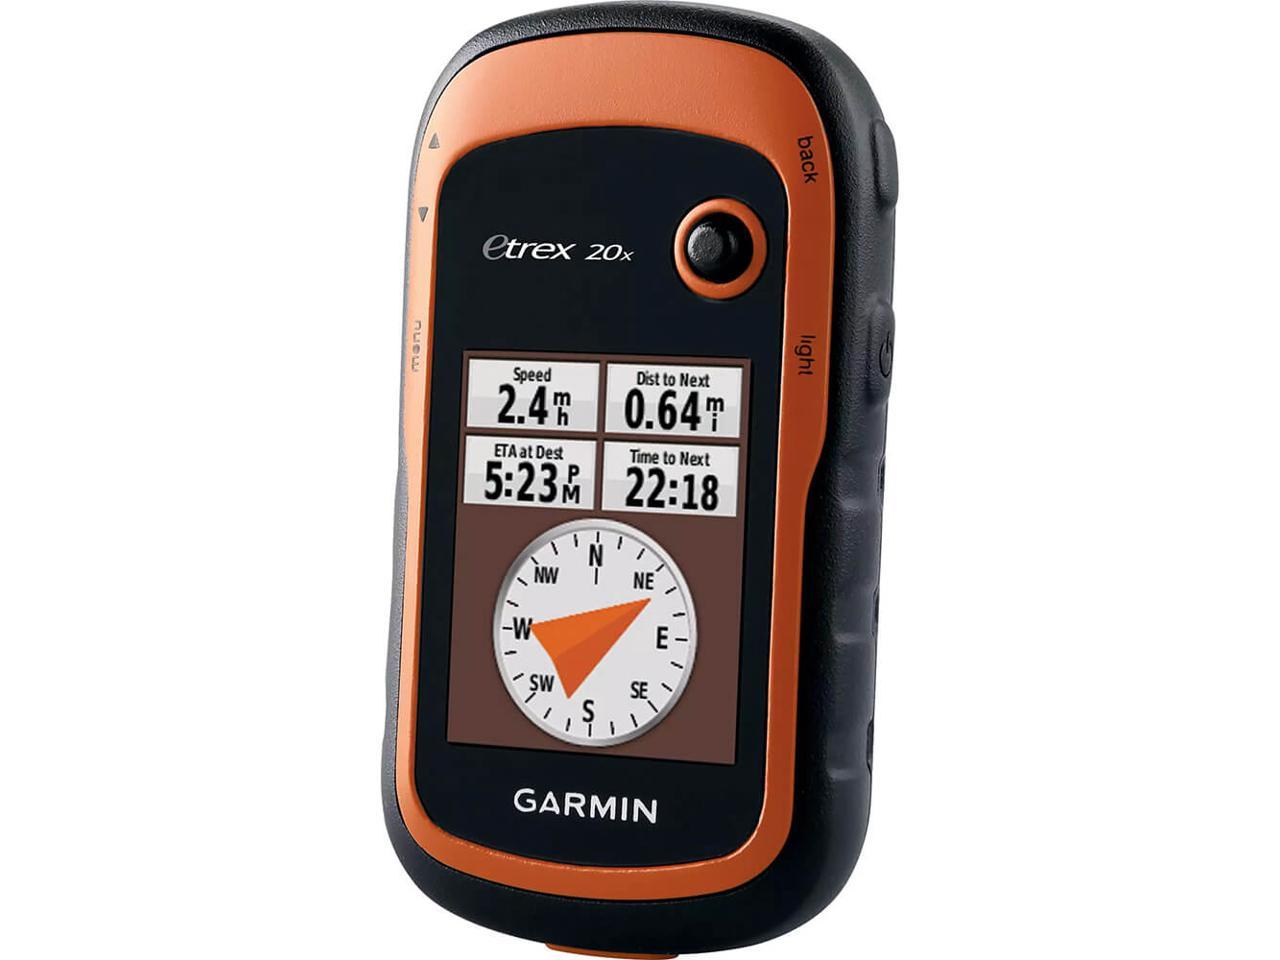 Garmin eTrex 20x Handheld GPS - Newegg.com